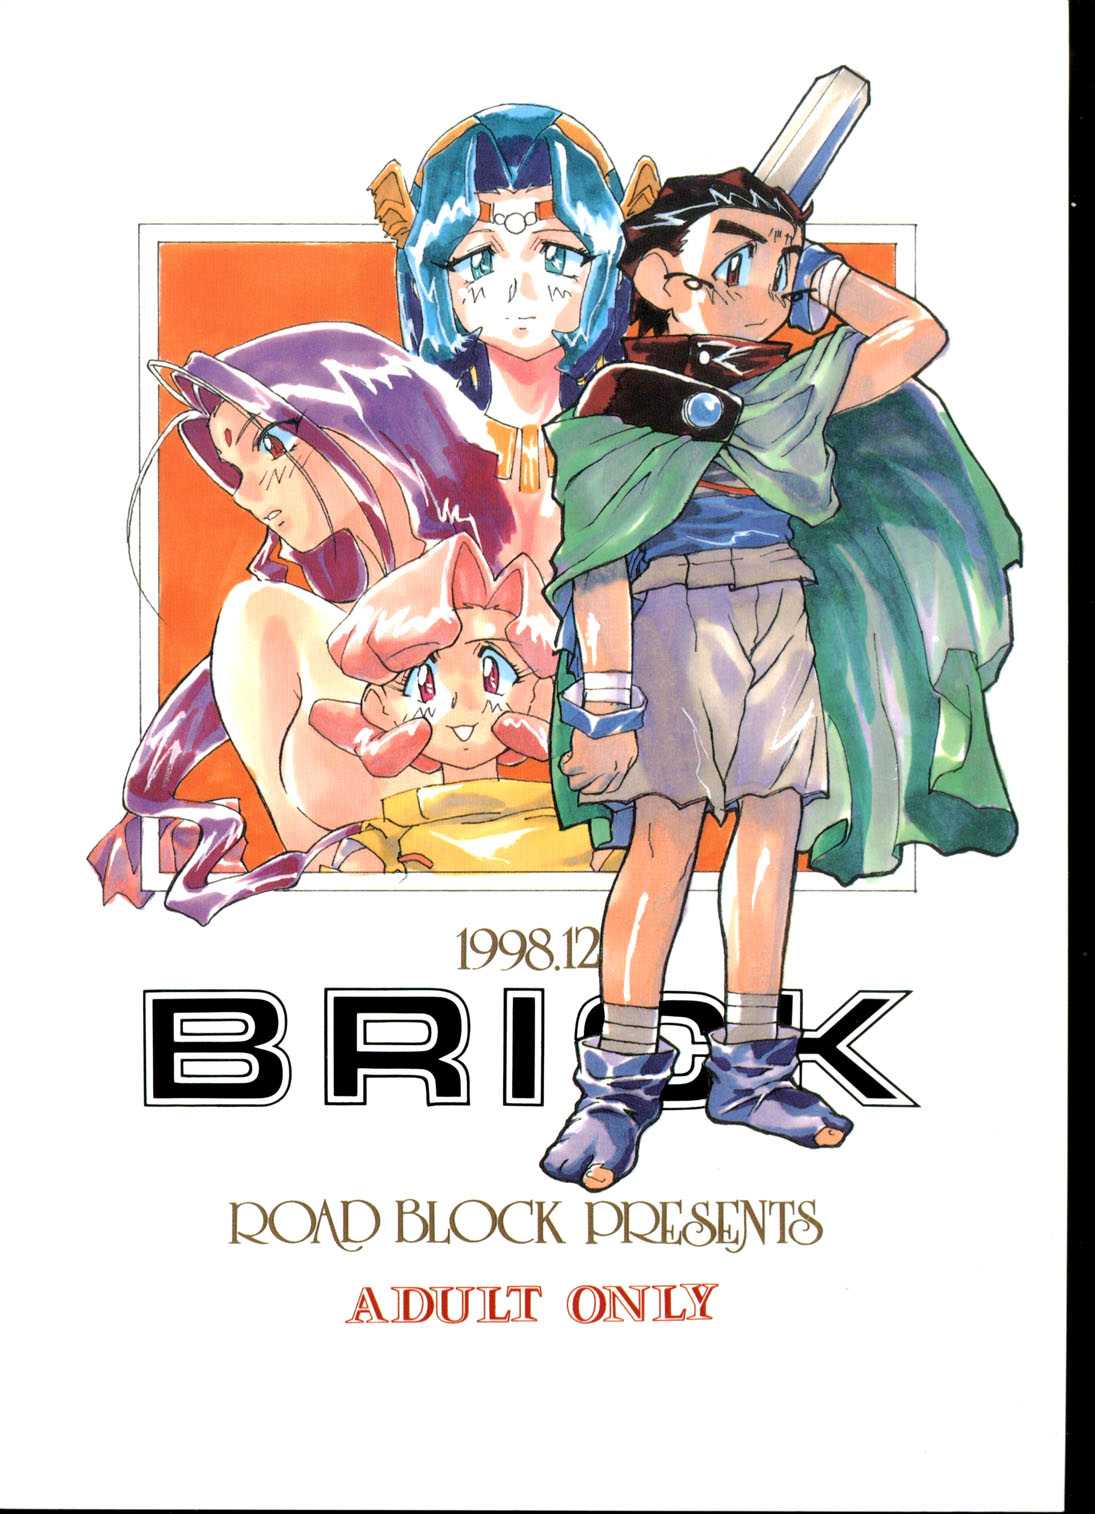 [Road Block (Takimoto Satoru)] Brick (Photon) [ROAD BLOCK (滝本悟)] Brick (フォトン)